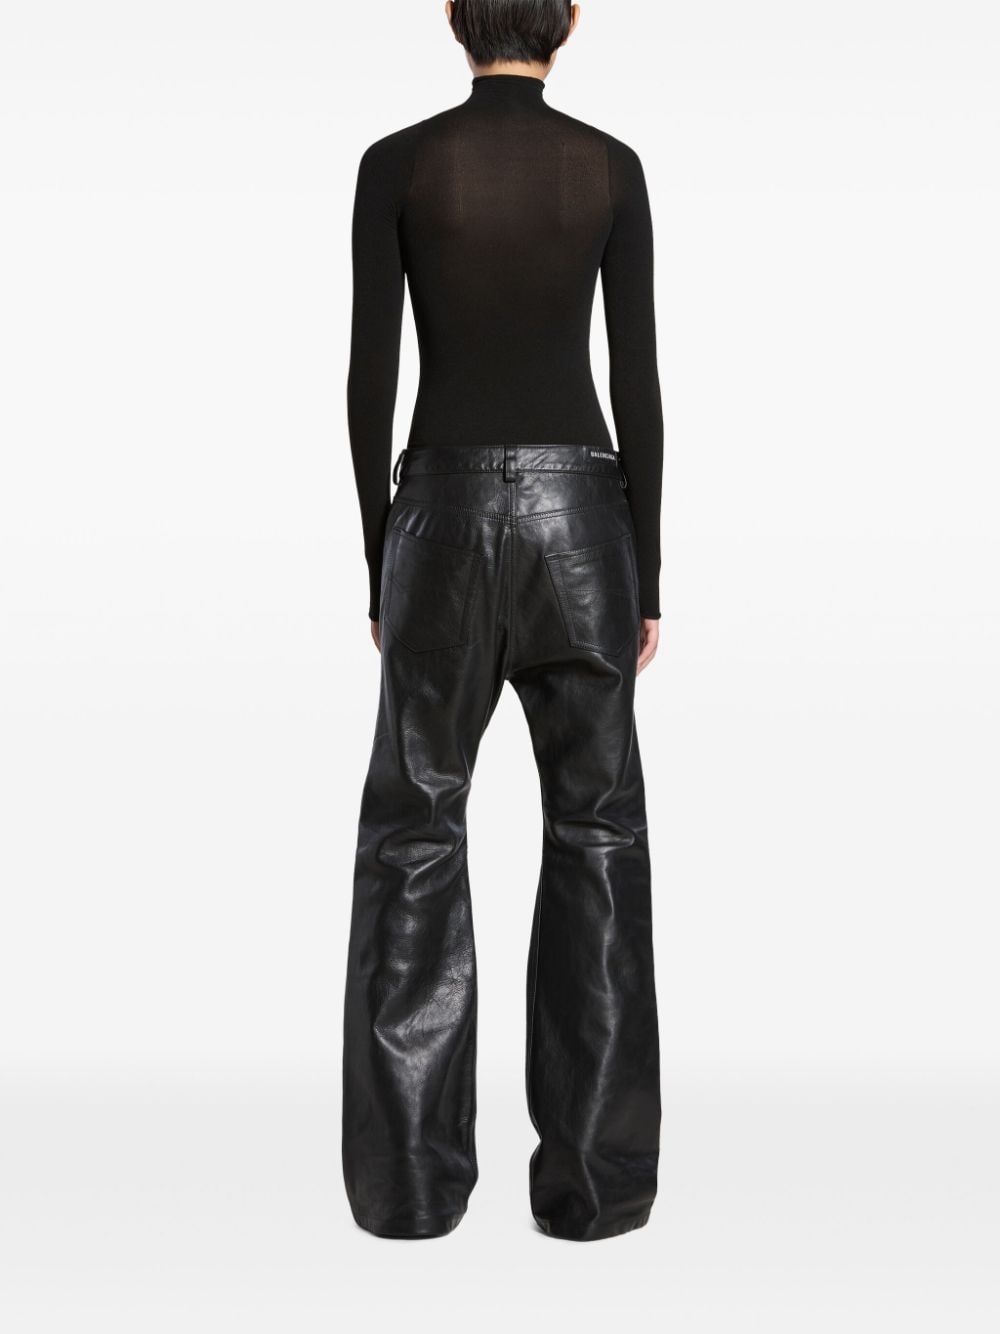 Balenciaga Flared broek Zwart